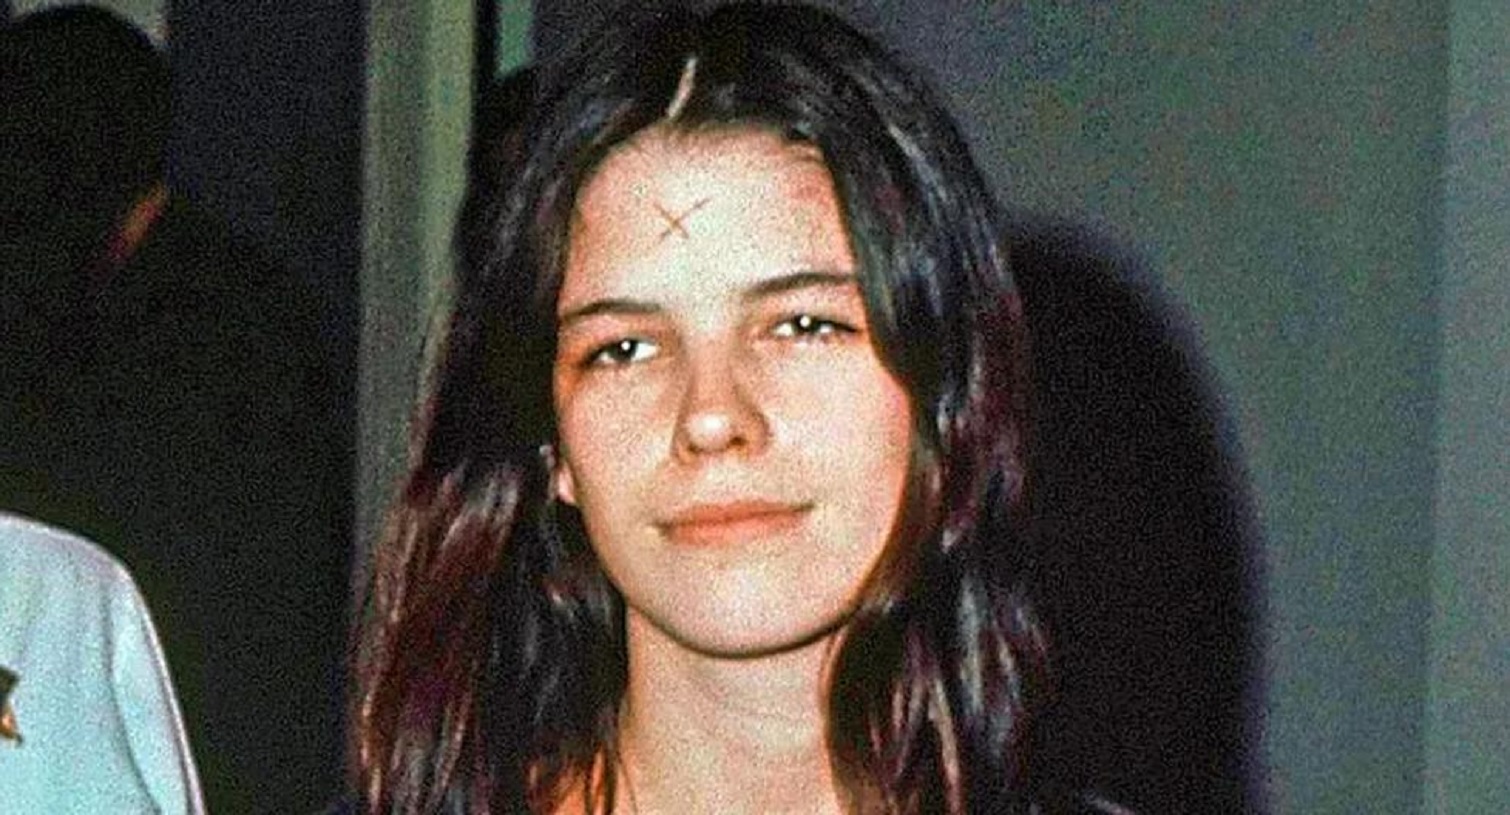 El horrendo crimen de Leslie Van Houten, la seguidora más joven de Charles Manson que saldrá en libertad